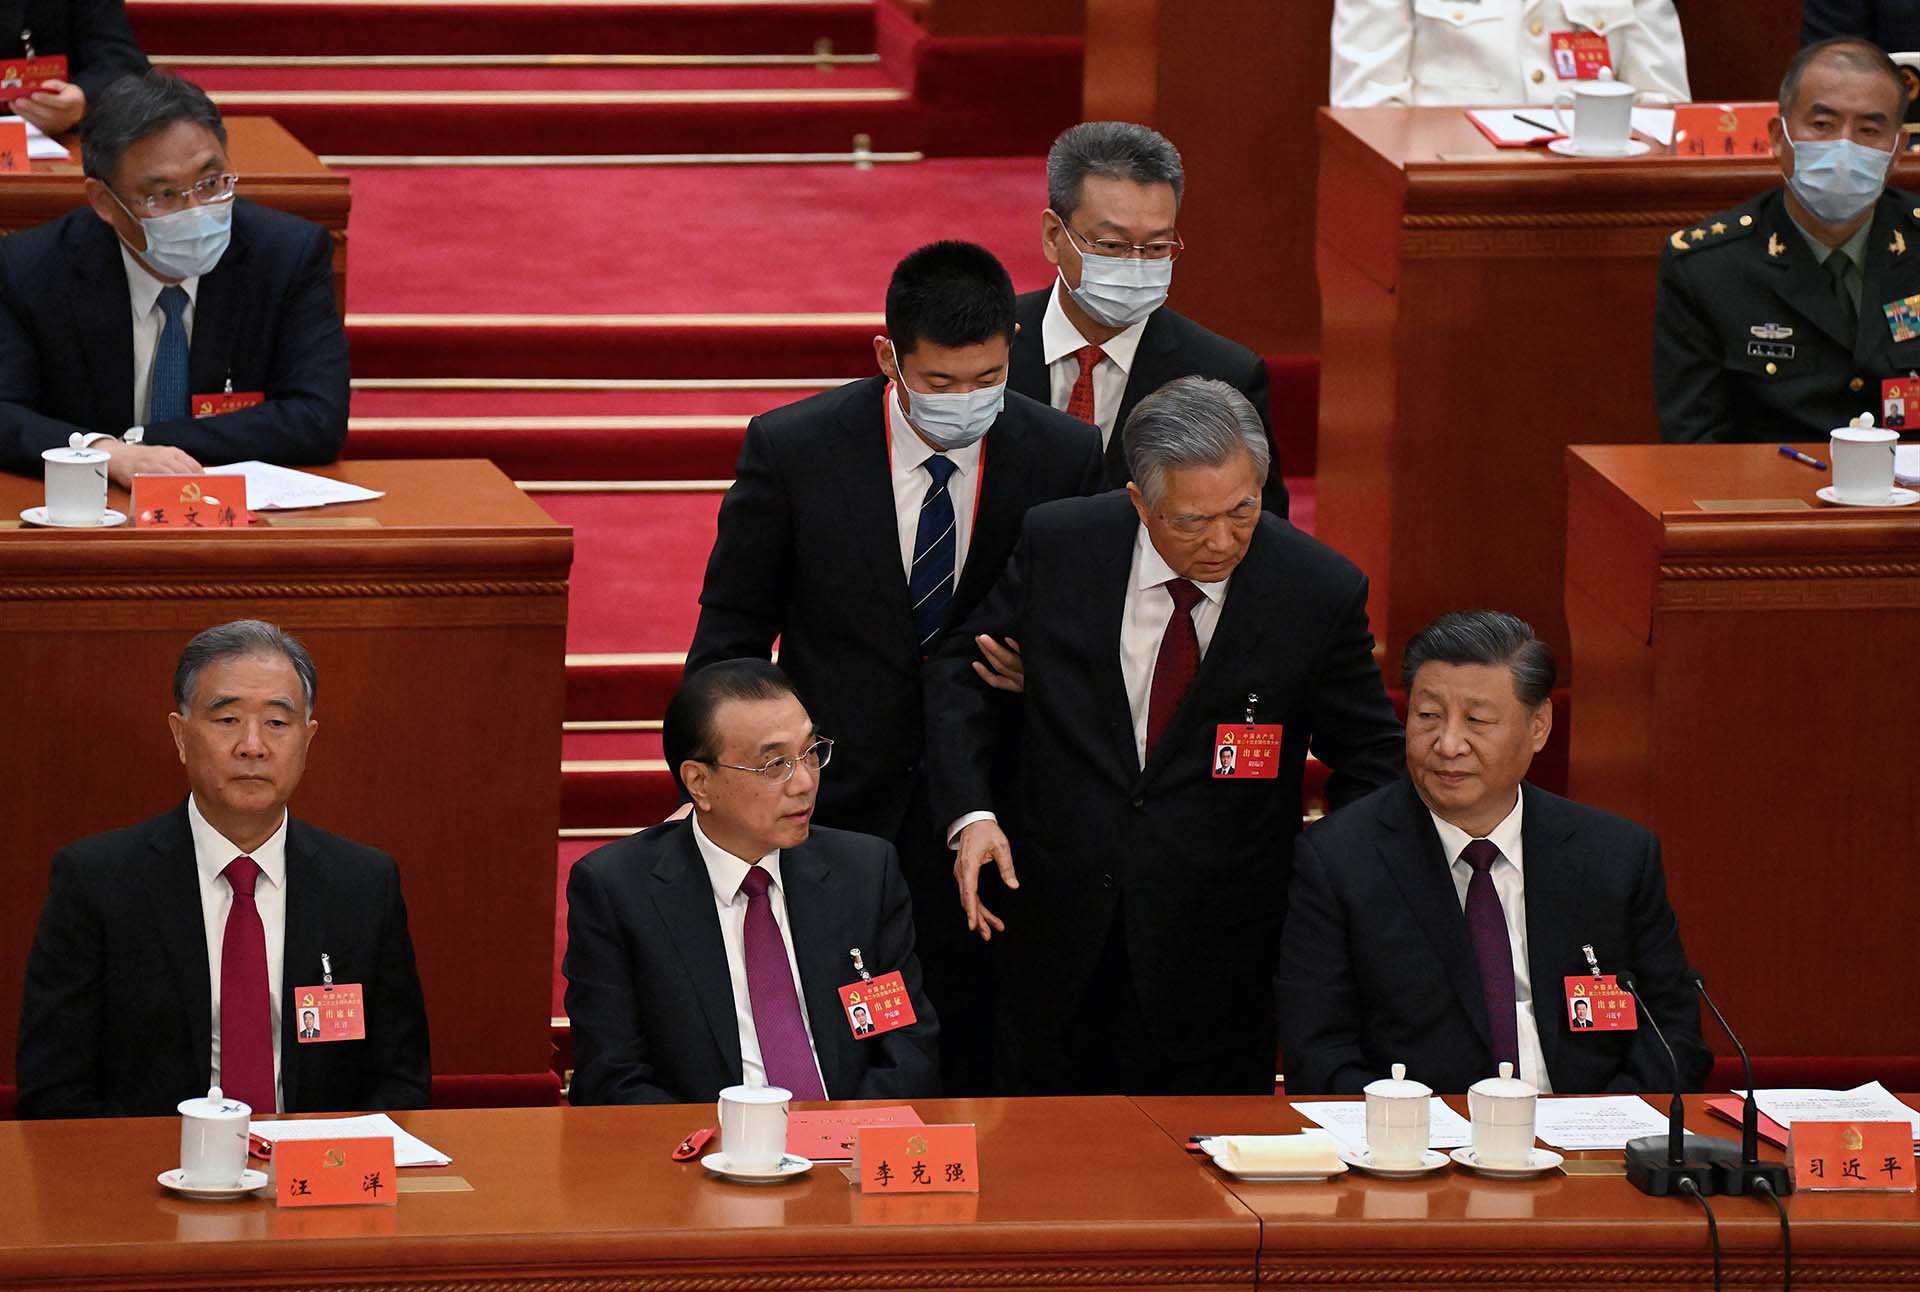 El presidente de China, Xi Jingping, ordena la expulsión del expresidente Hu Jintao de la ceremonia del Congreso Comunista.